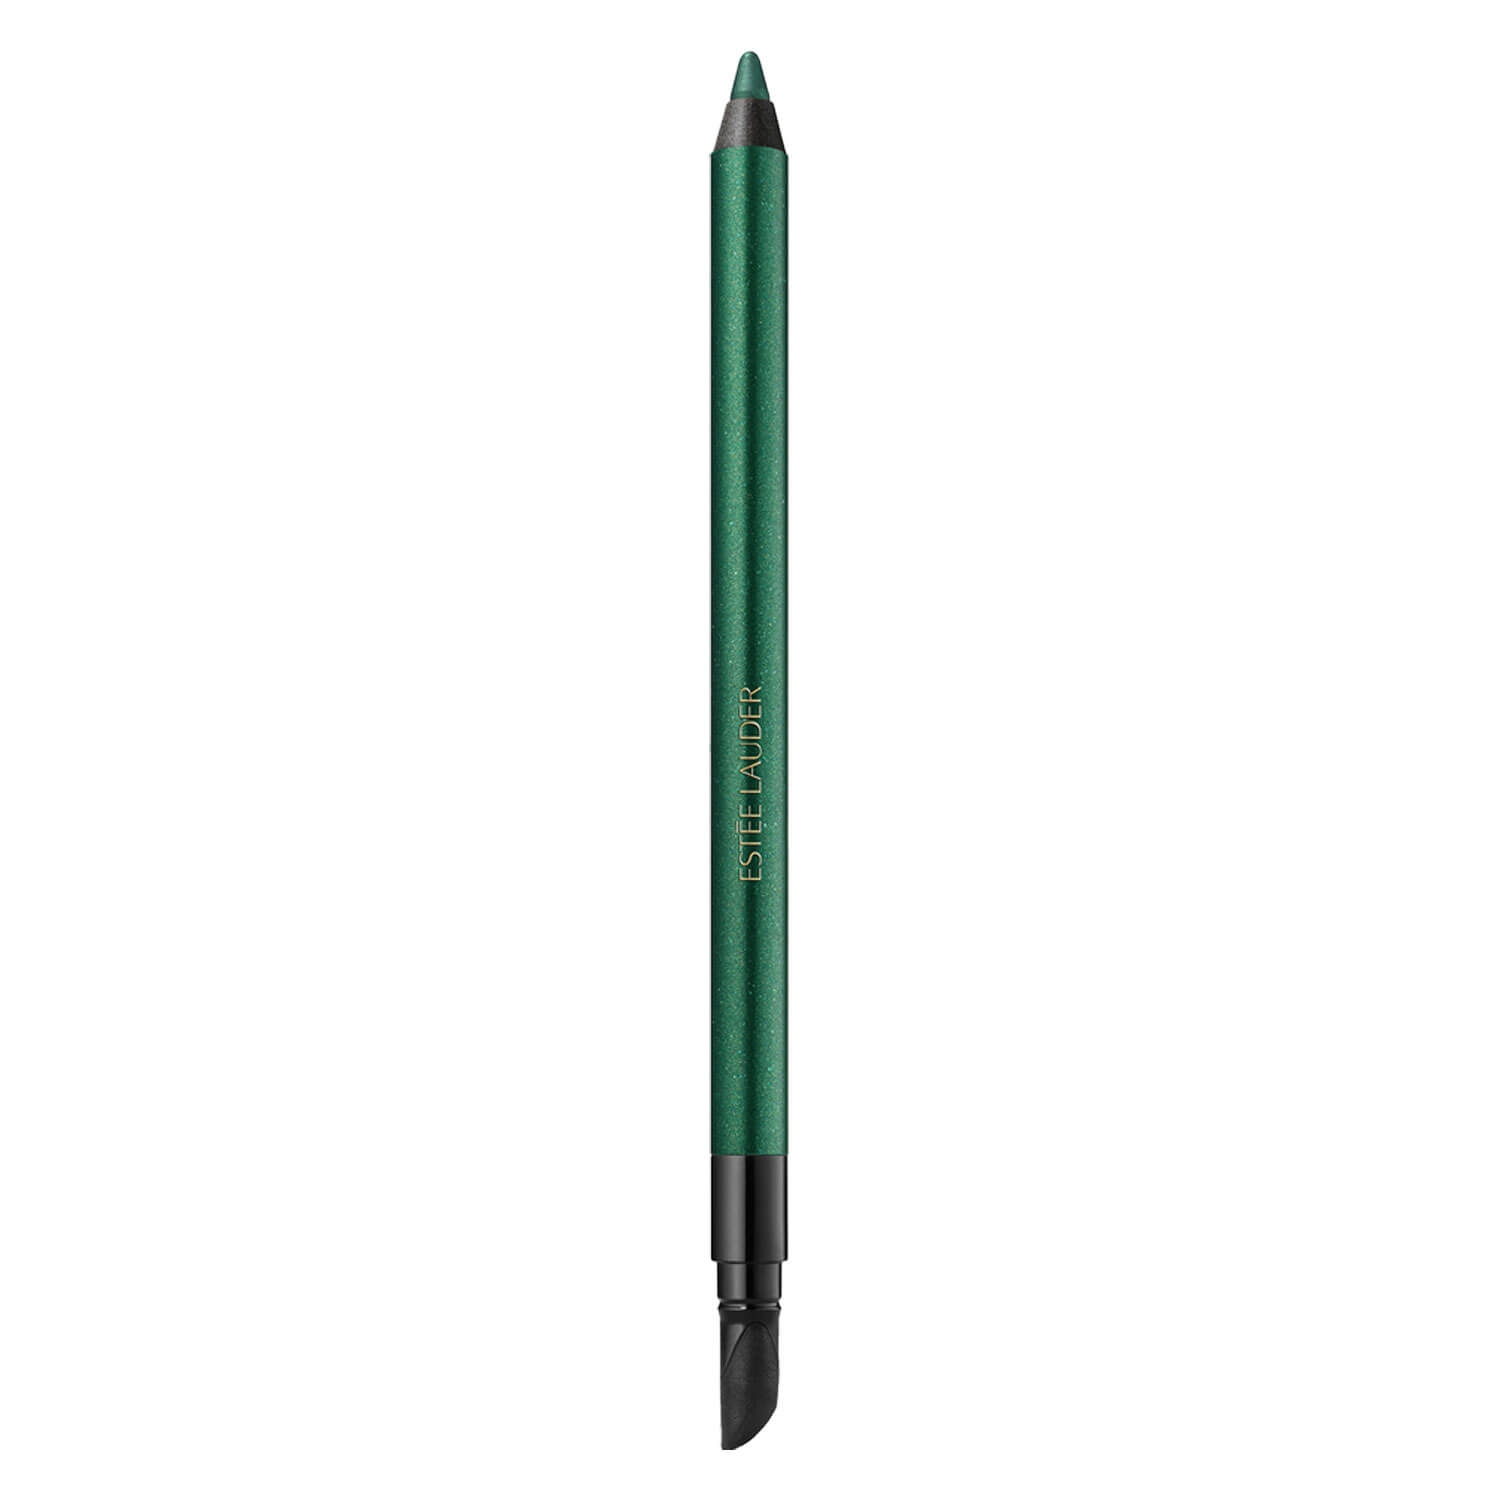 Produktbild von Double Wear - 24H Waterproof Gel Eye Pencil Emerald Volt